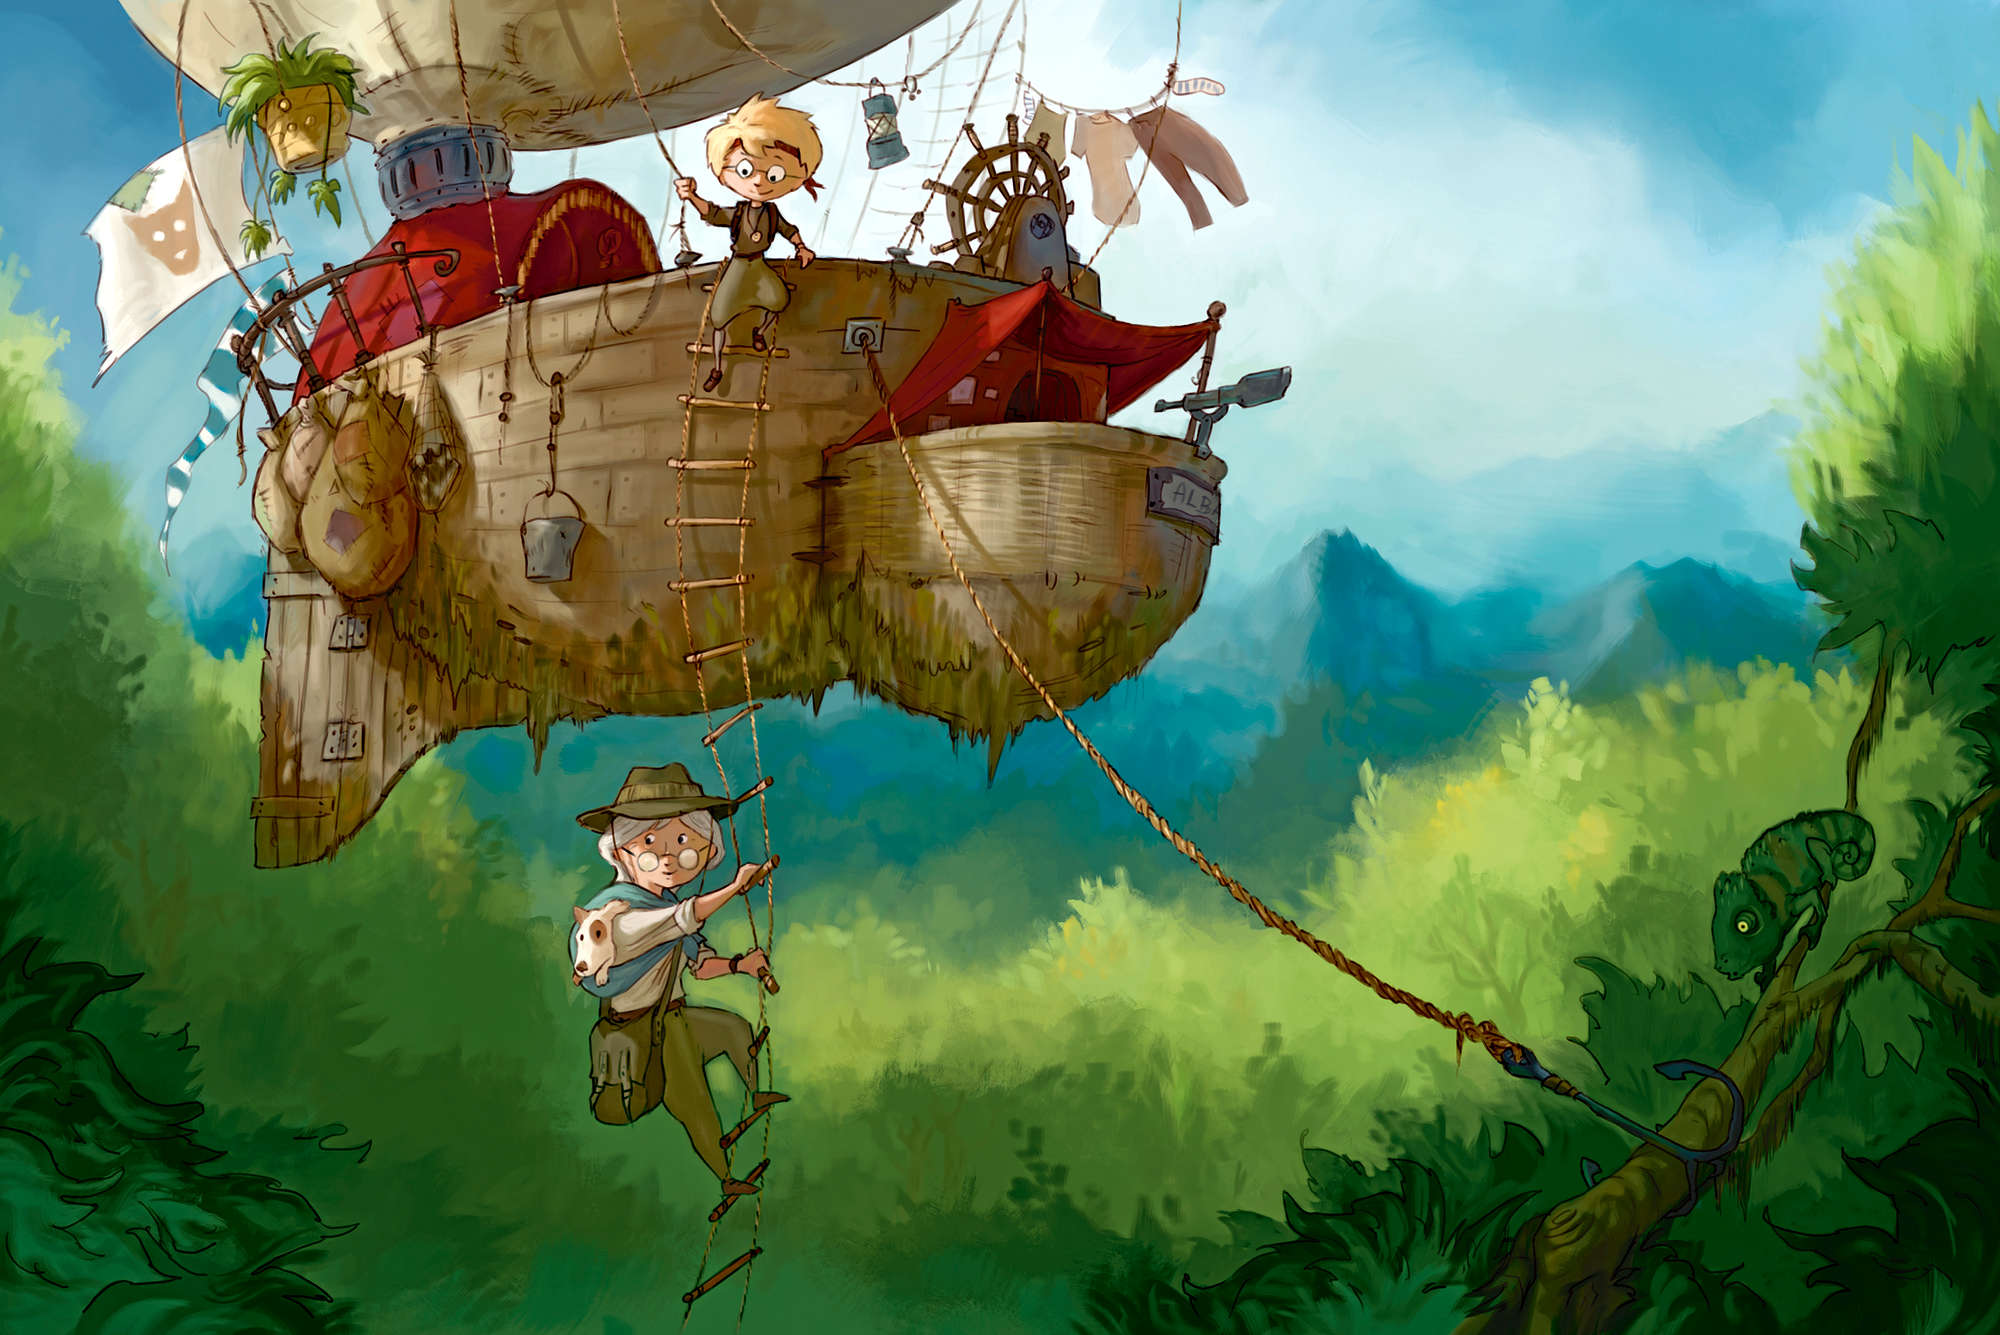             Papel pintado infantil Aventurero con barco volador sobre lana mate
        